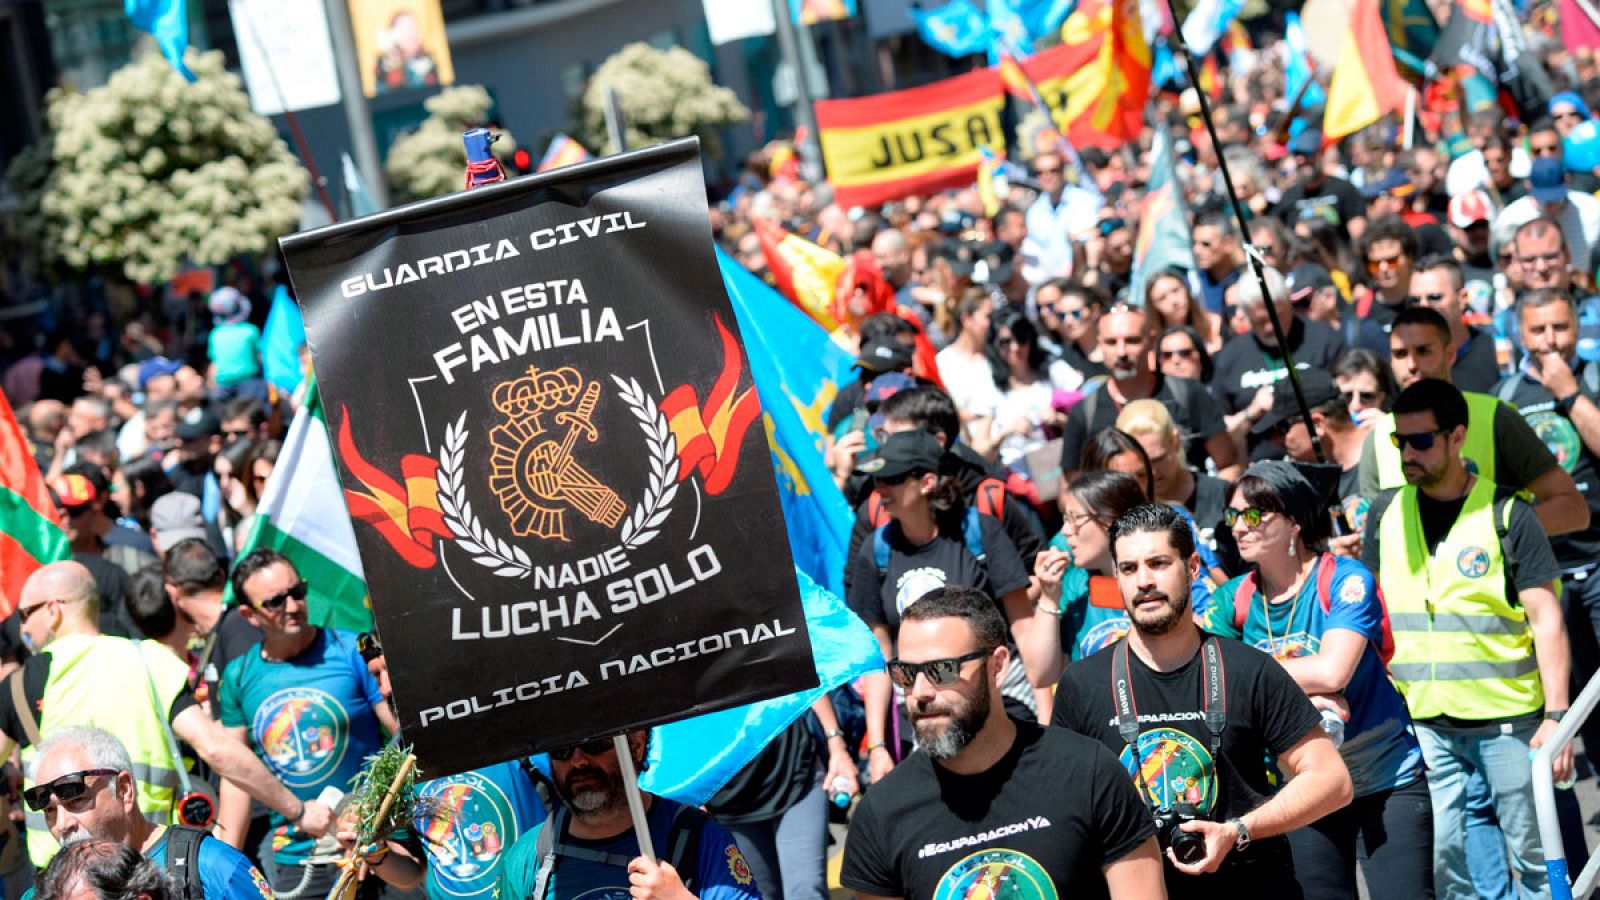 Manifestación por la "equiparación salarial real" convocada por la asociación de Justicia Salarial Policial (Jusapol) en Madrid